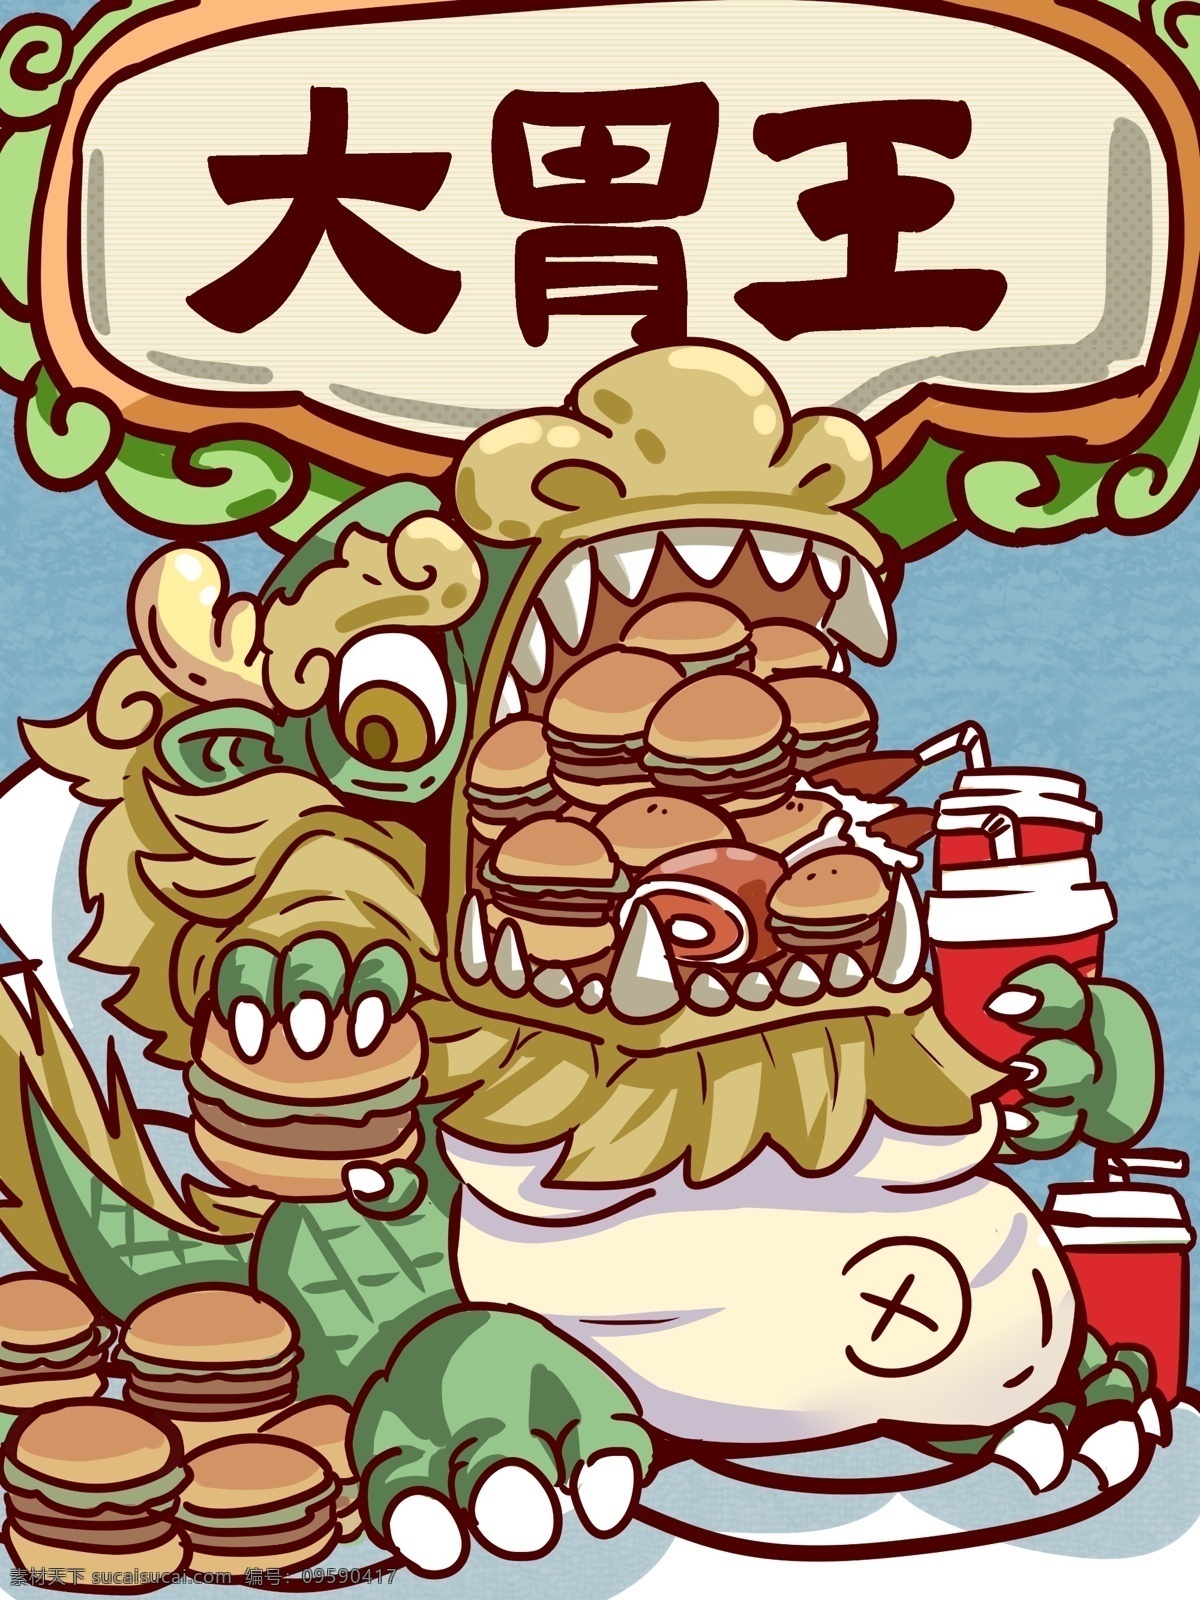 创意 大 胃 王 貔貅 吃 汉堡 中国风 卡通神兽 大胃王 汉堡包 肥宅